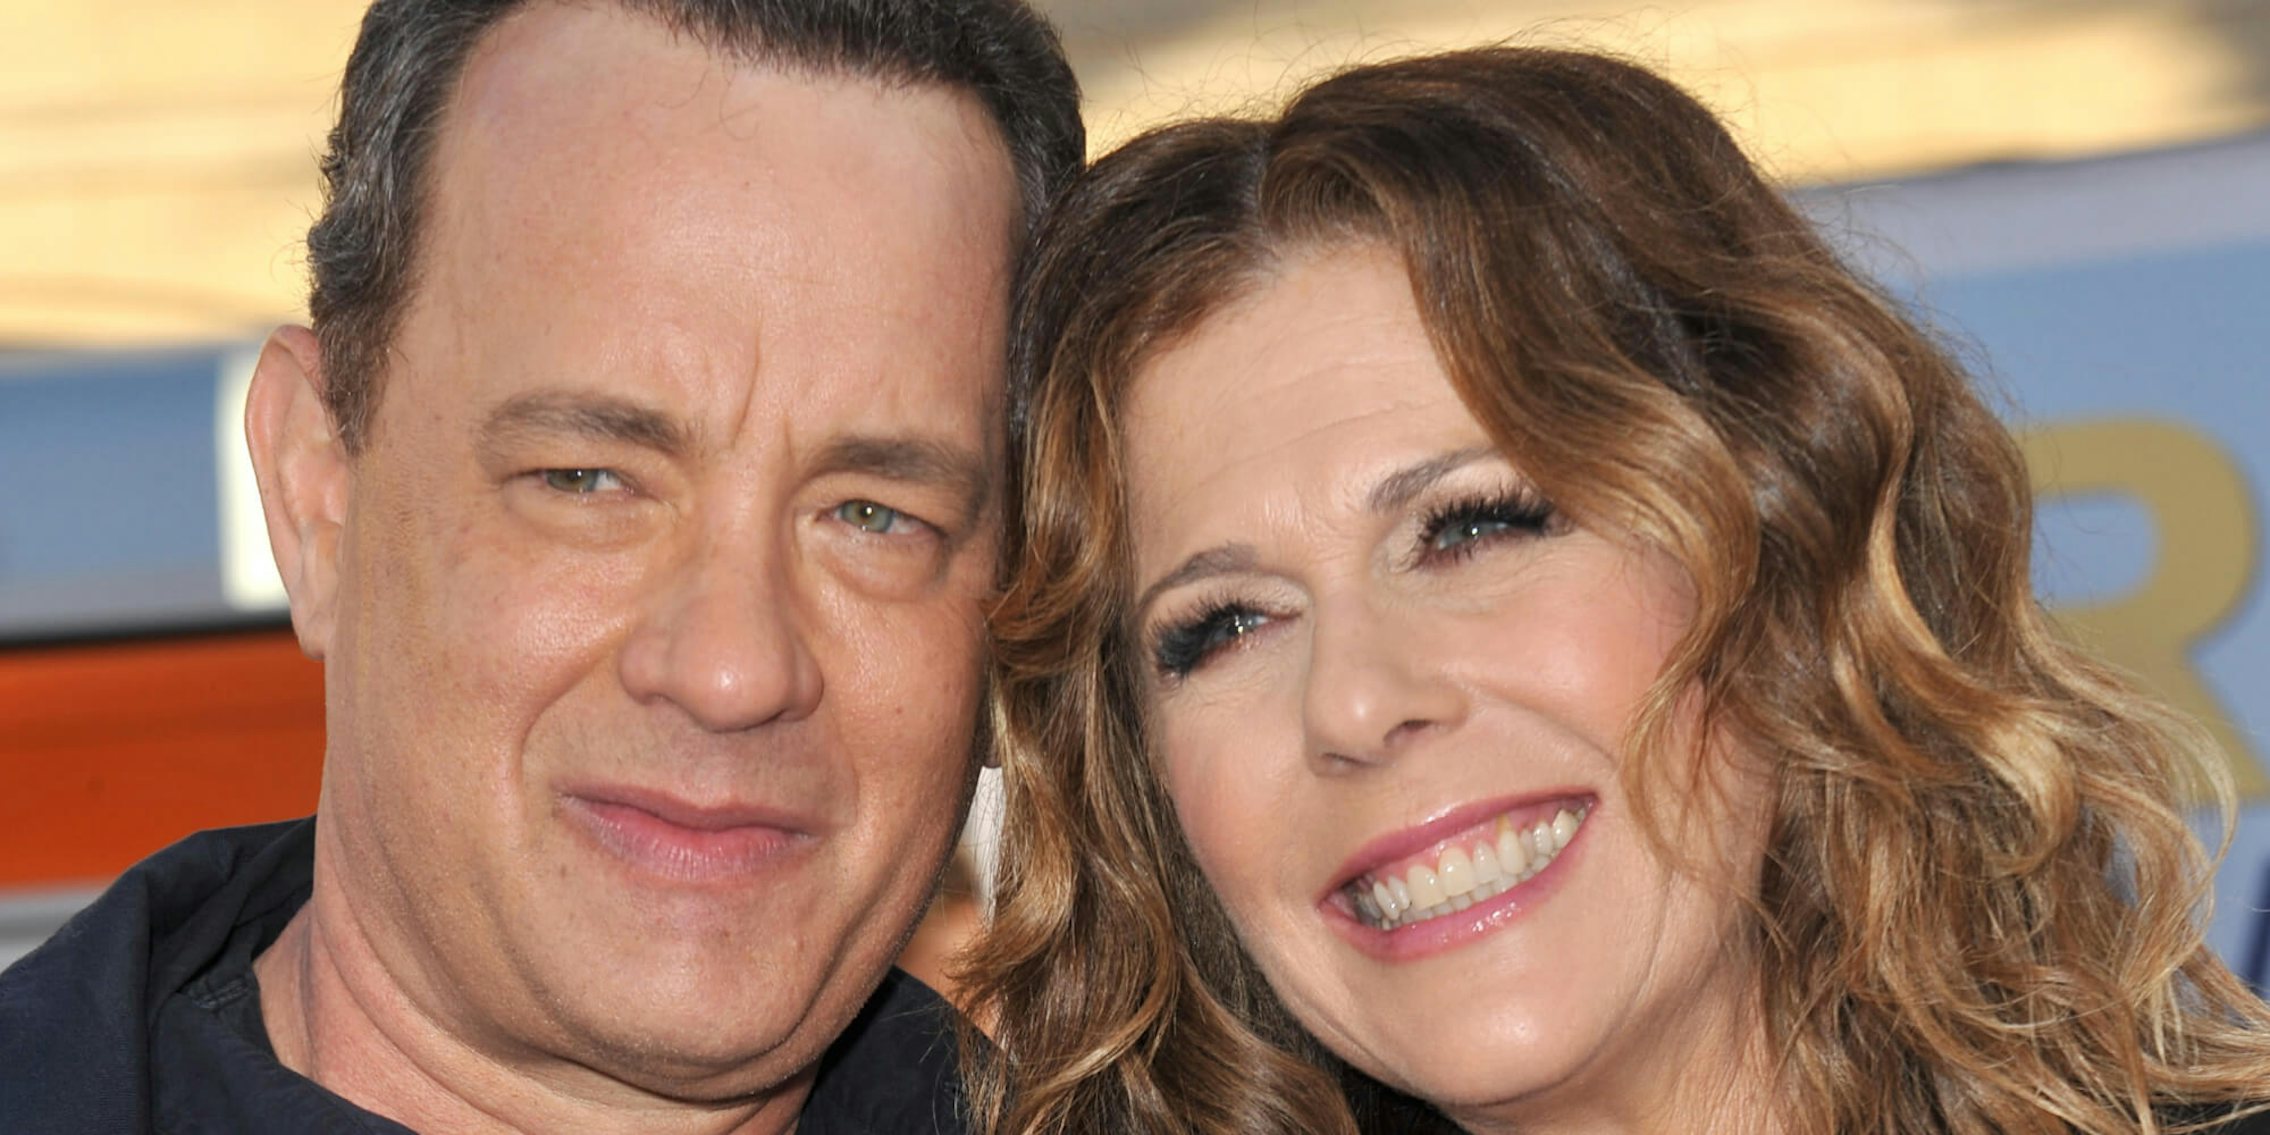 Tom Hanks And Rita Wilson Share An Update From Quarantine